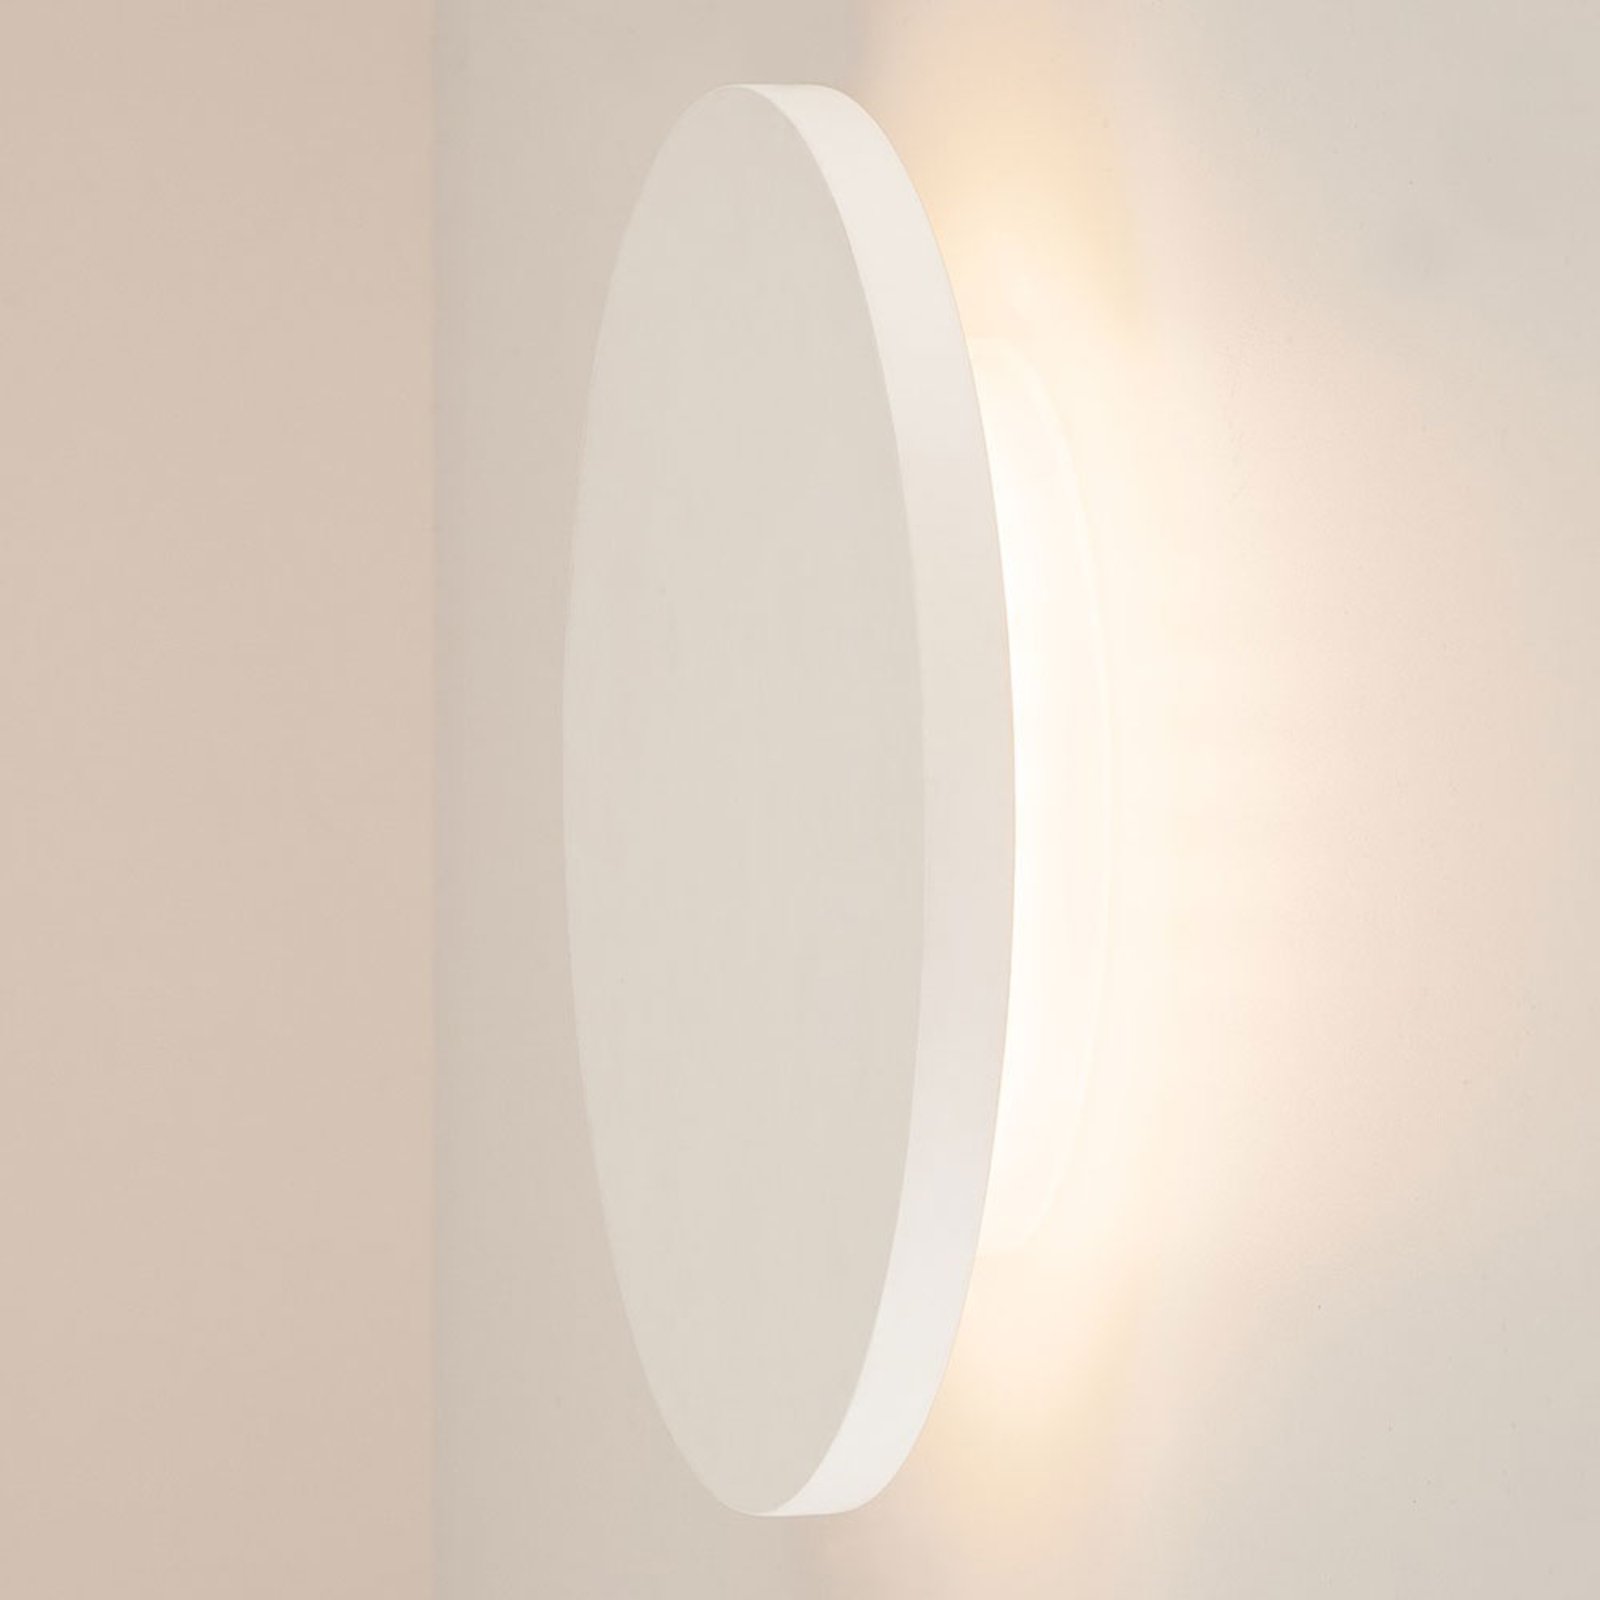 Projecteur moderne ovale Plâtre Blanc Intérieur/Extérieur Mur Montage Support Lumière